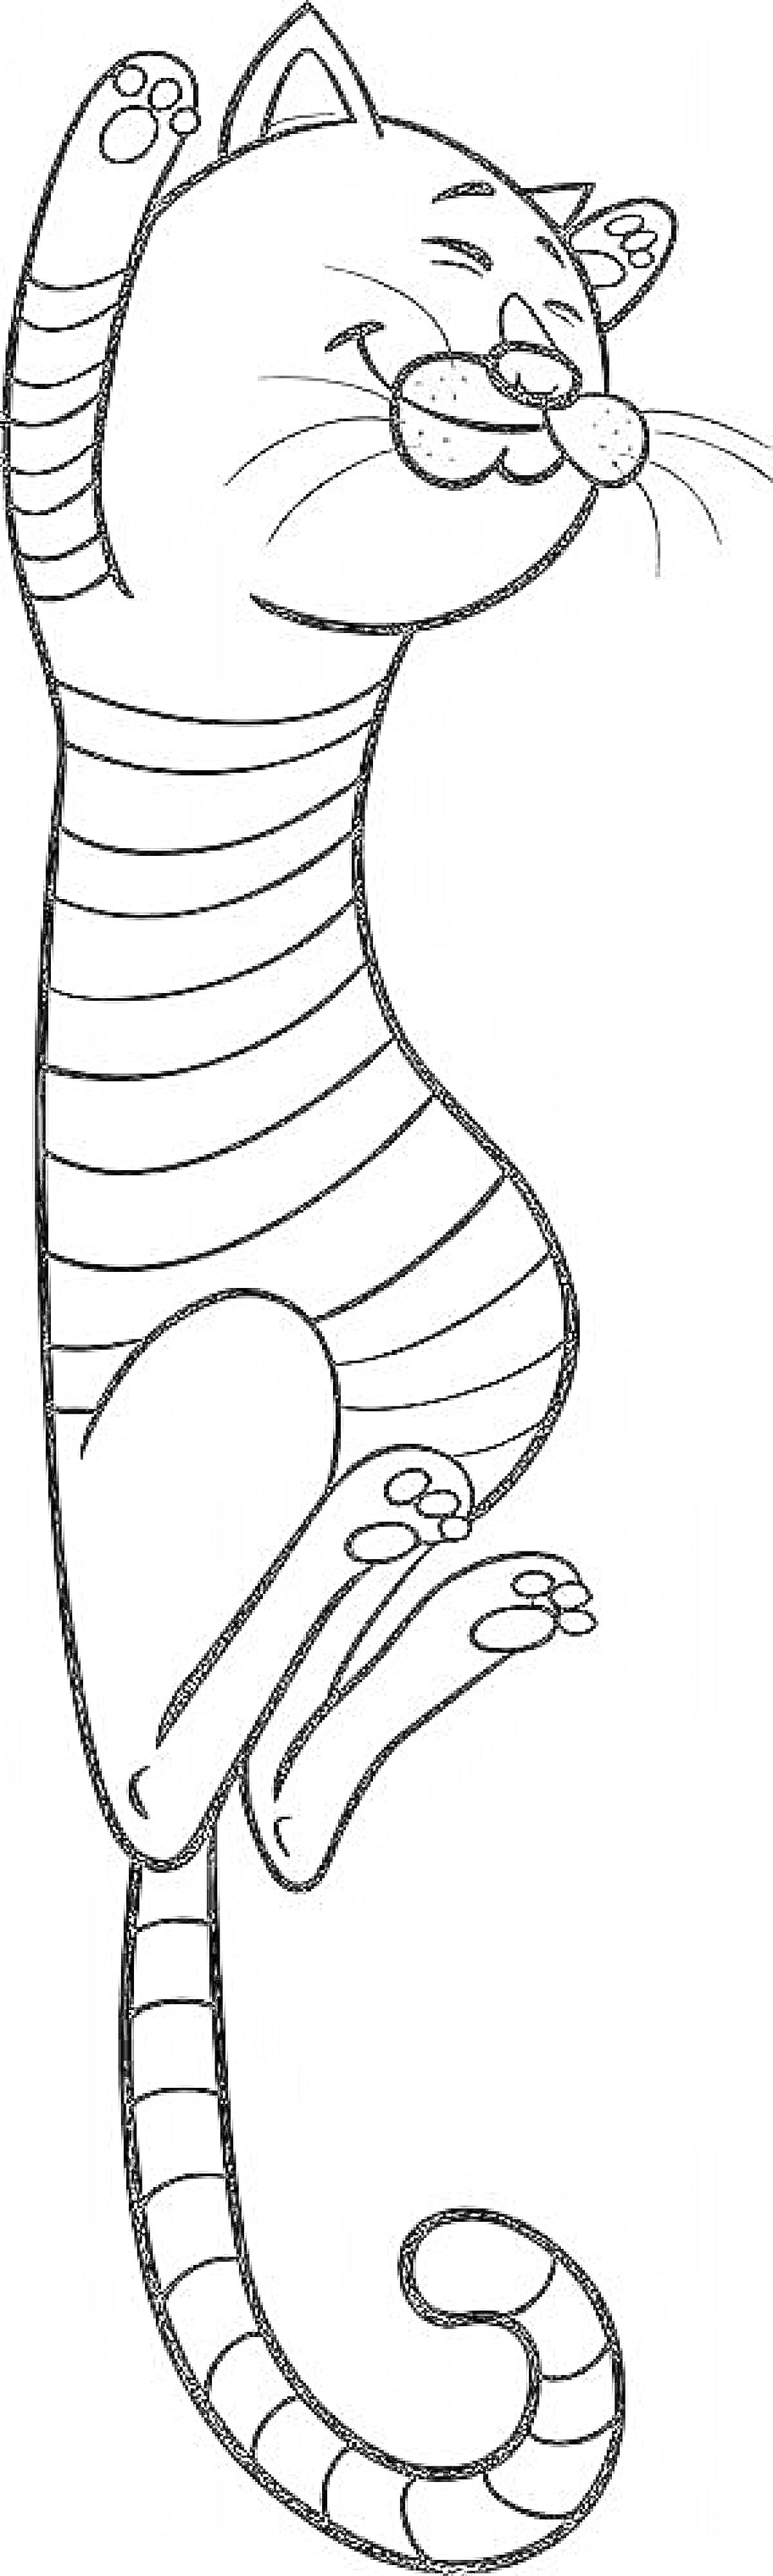 Раскраска Полосатый кот, стоящий на задних лапах с вытянутыми передними лапами и улыбающимся лицом